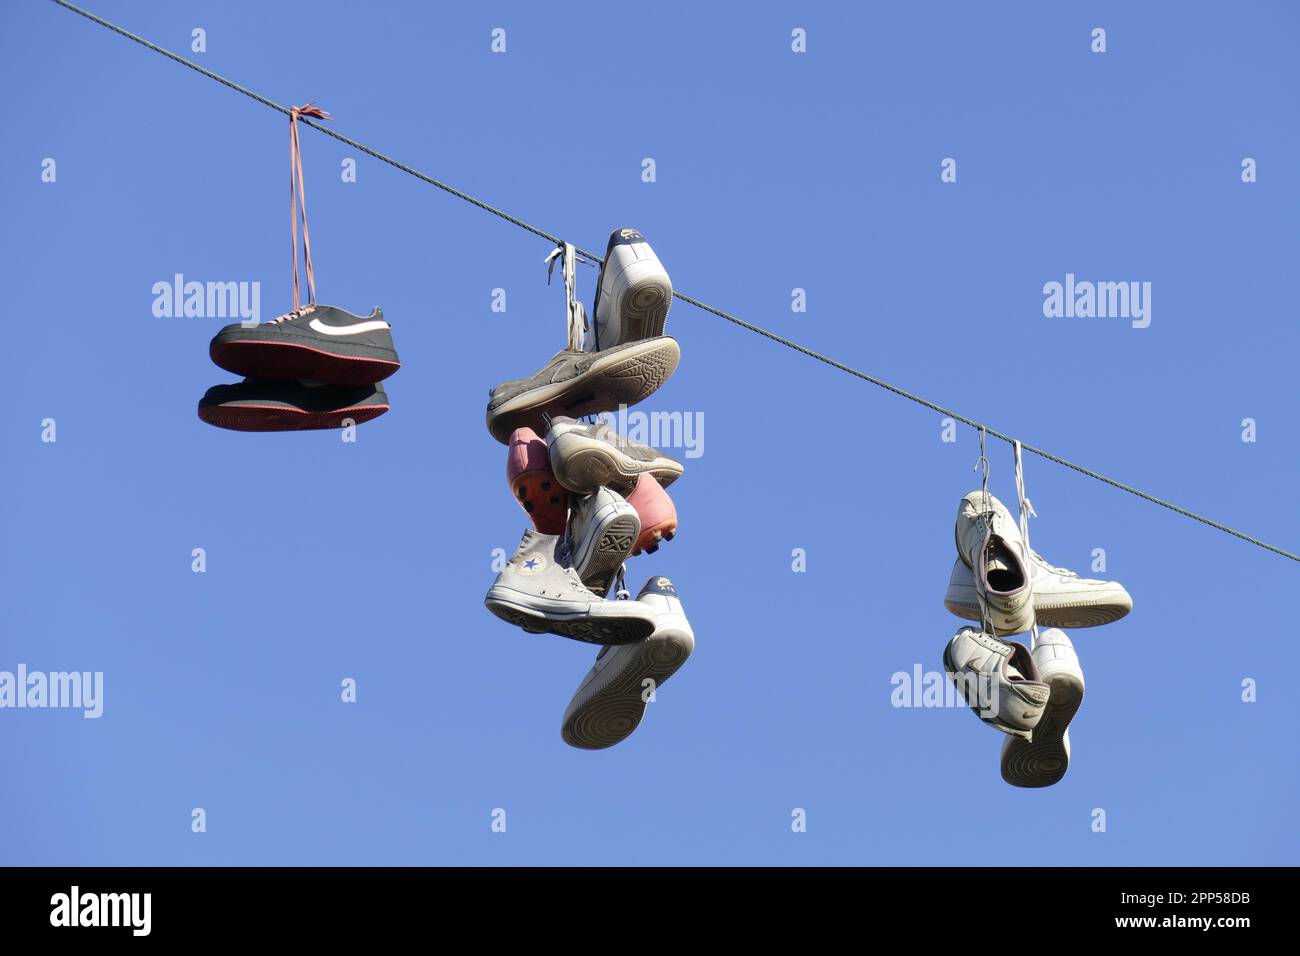 Schuhe an der Leine, Straßenkunst, Bremen, Deutschland Stockfotografie -  Alamy